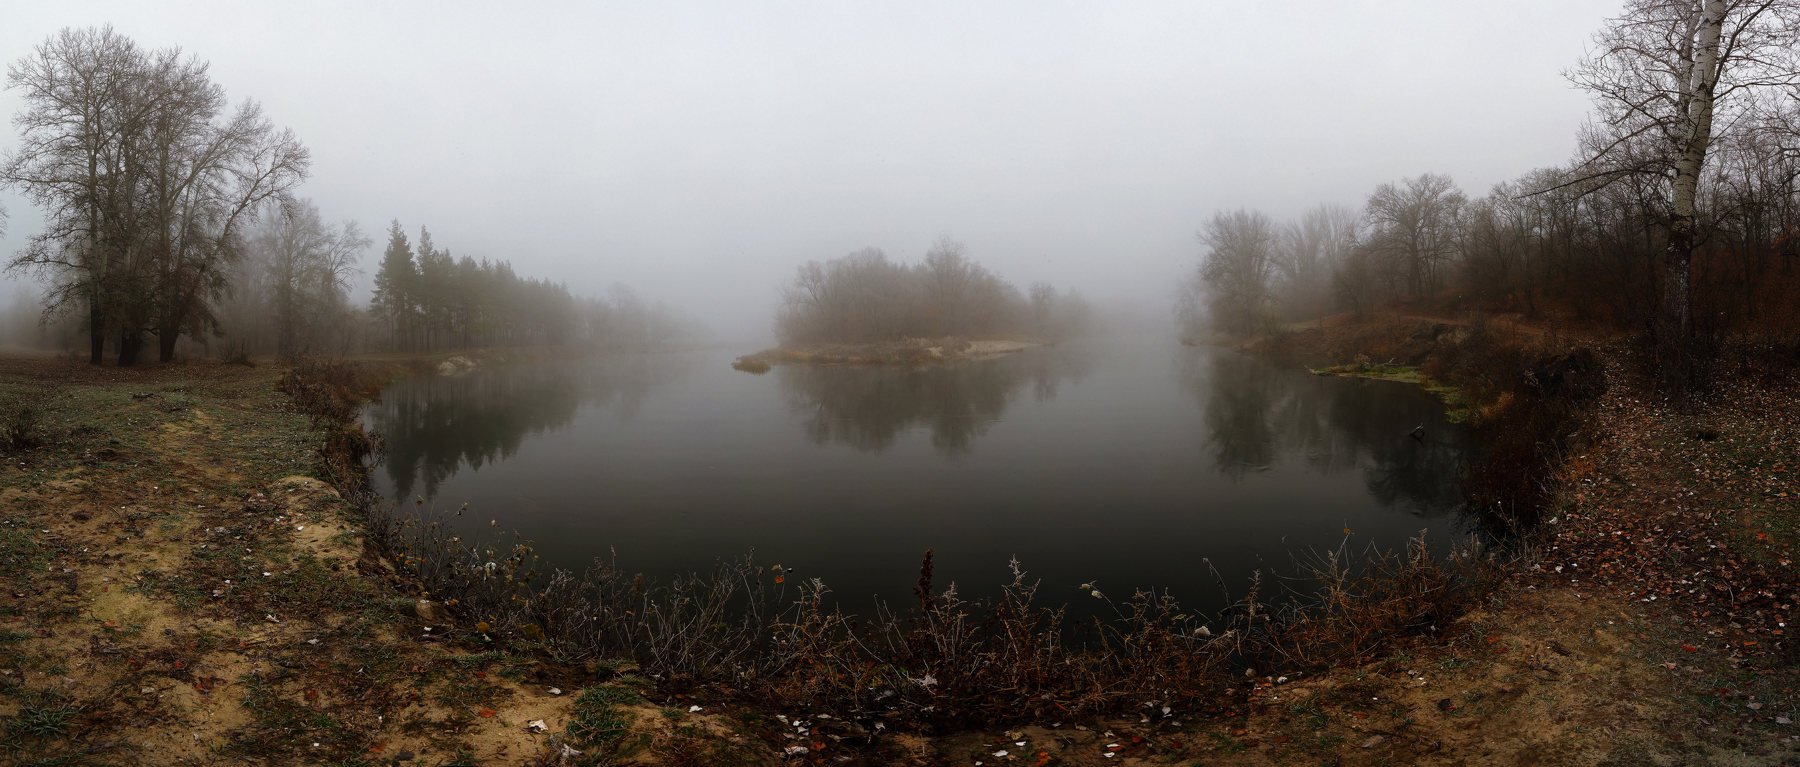 осень панорама река туман утро, Петриченко Валерий